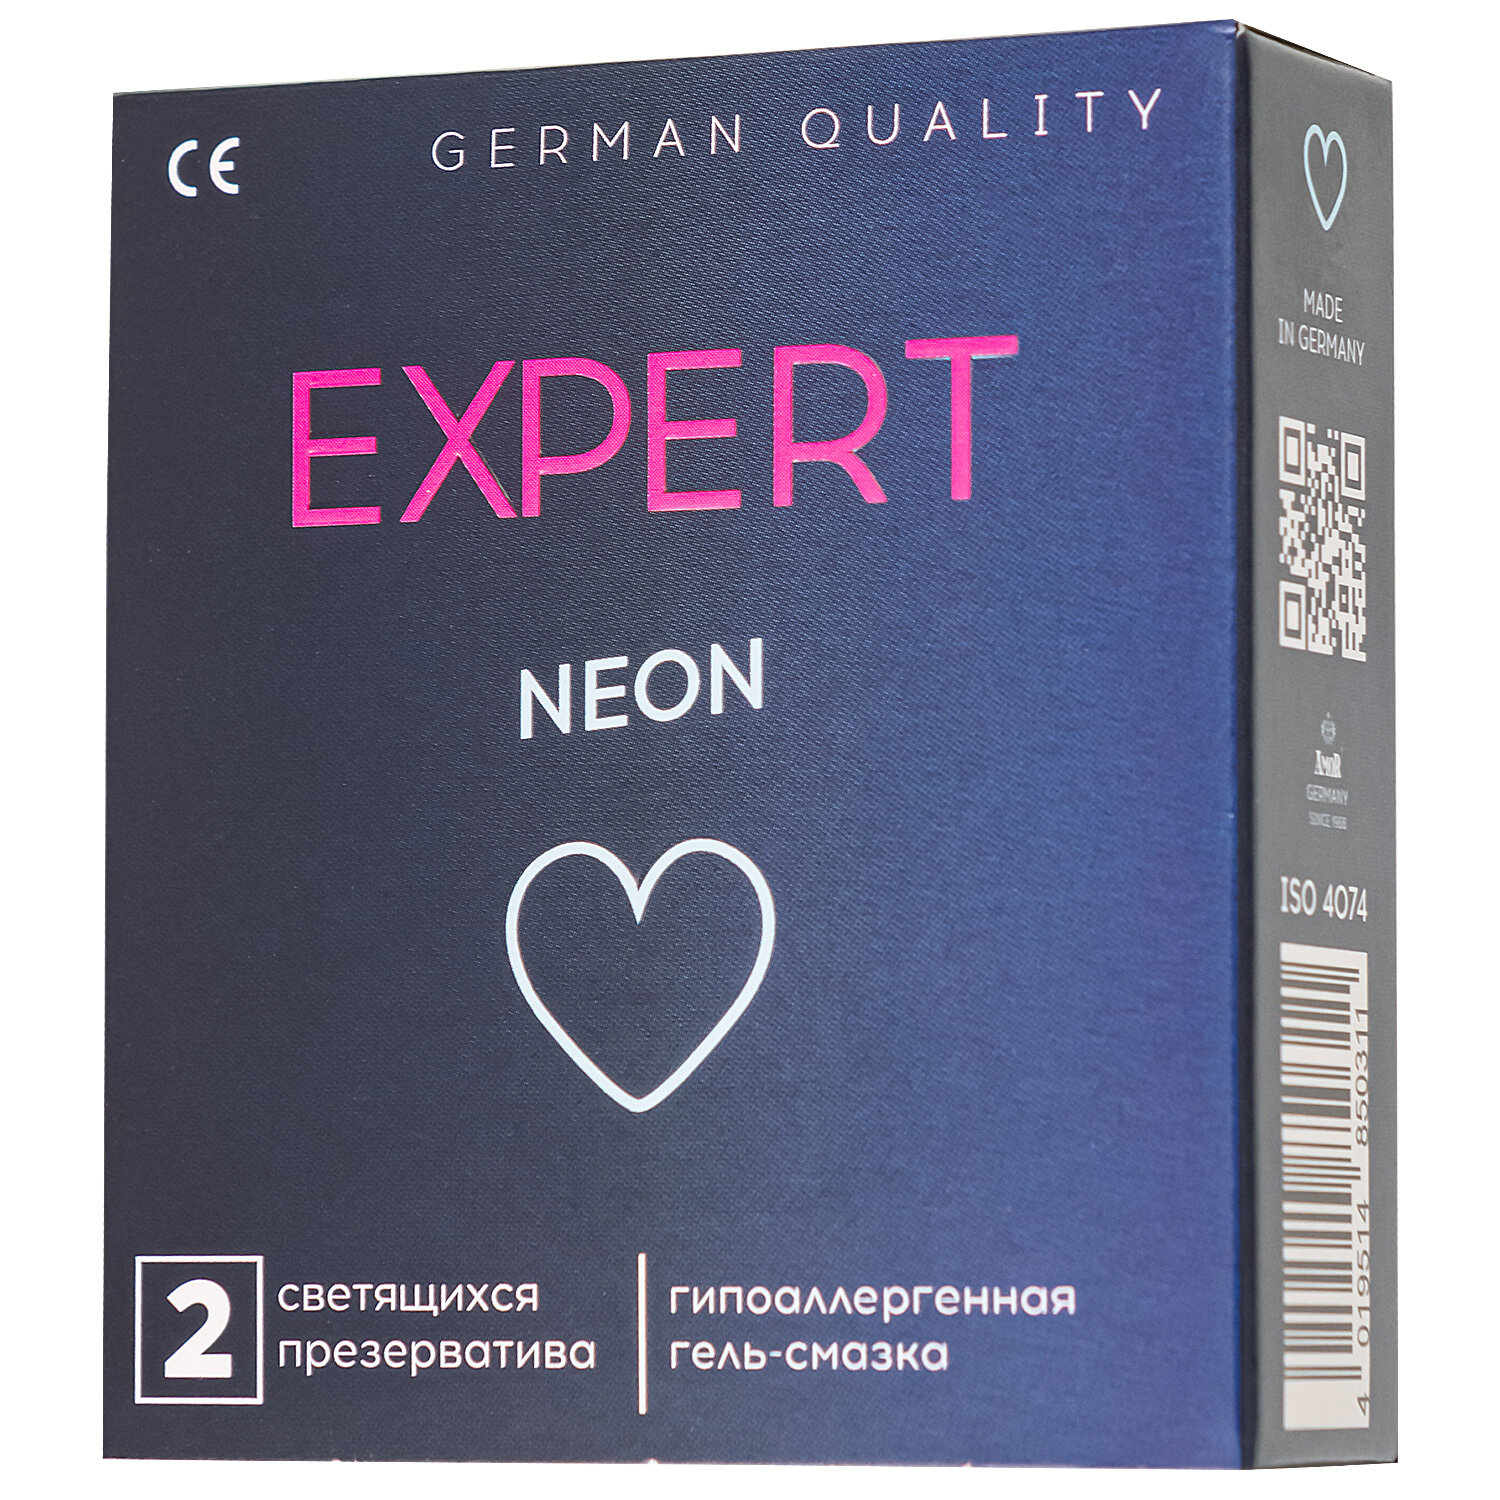 Презервативы Expert Neon, 2 шт.